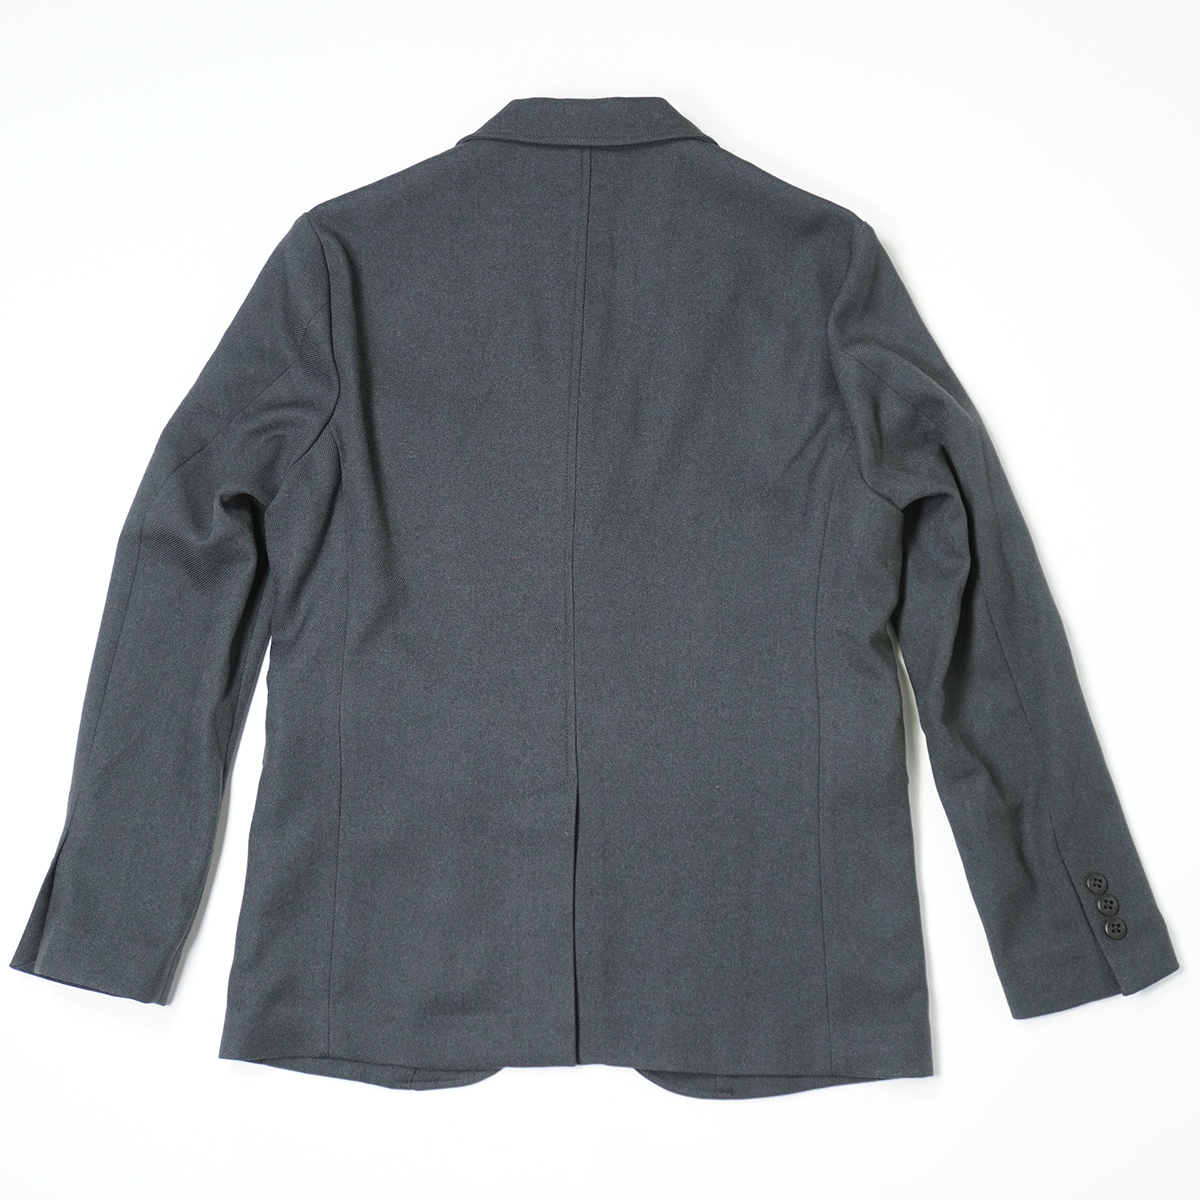 BOGLIOLI スーツ COAT ネイビー セットアップ シェルボタン - スーツ